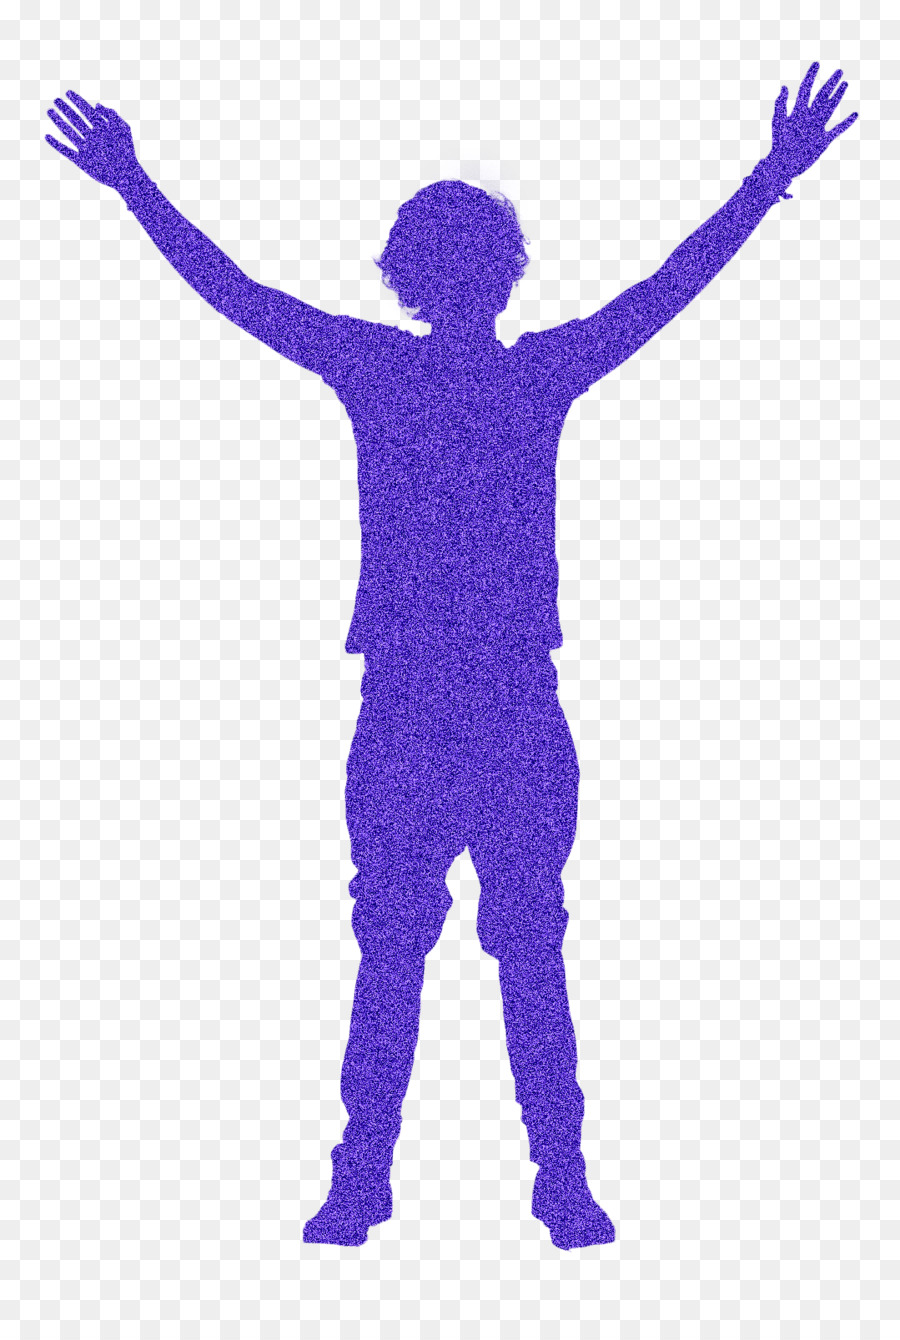 Human behavior Shoulder Outerwear Sleeve - Young Boy png download - 1079*1600 - Free Transparent Human Behavior png Download.